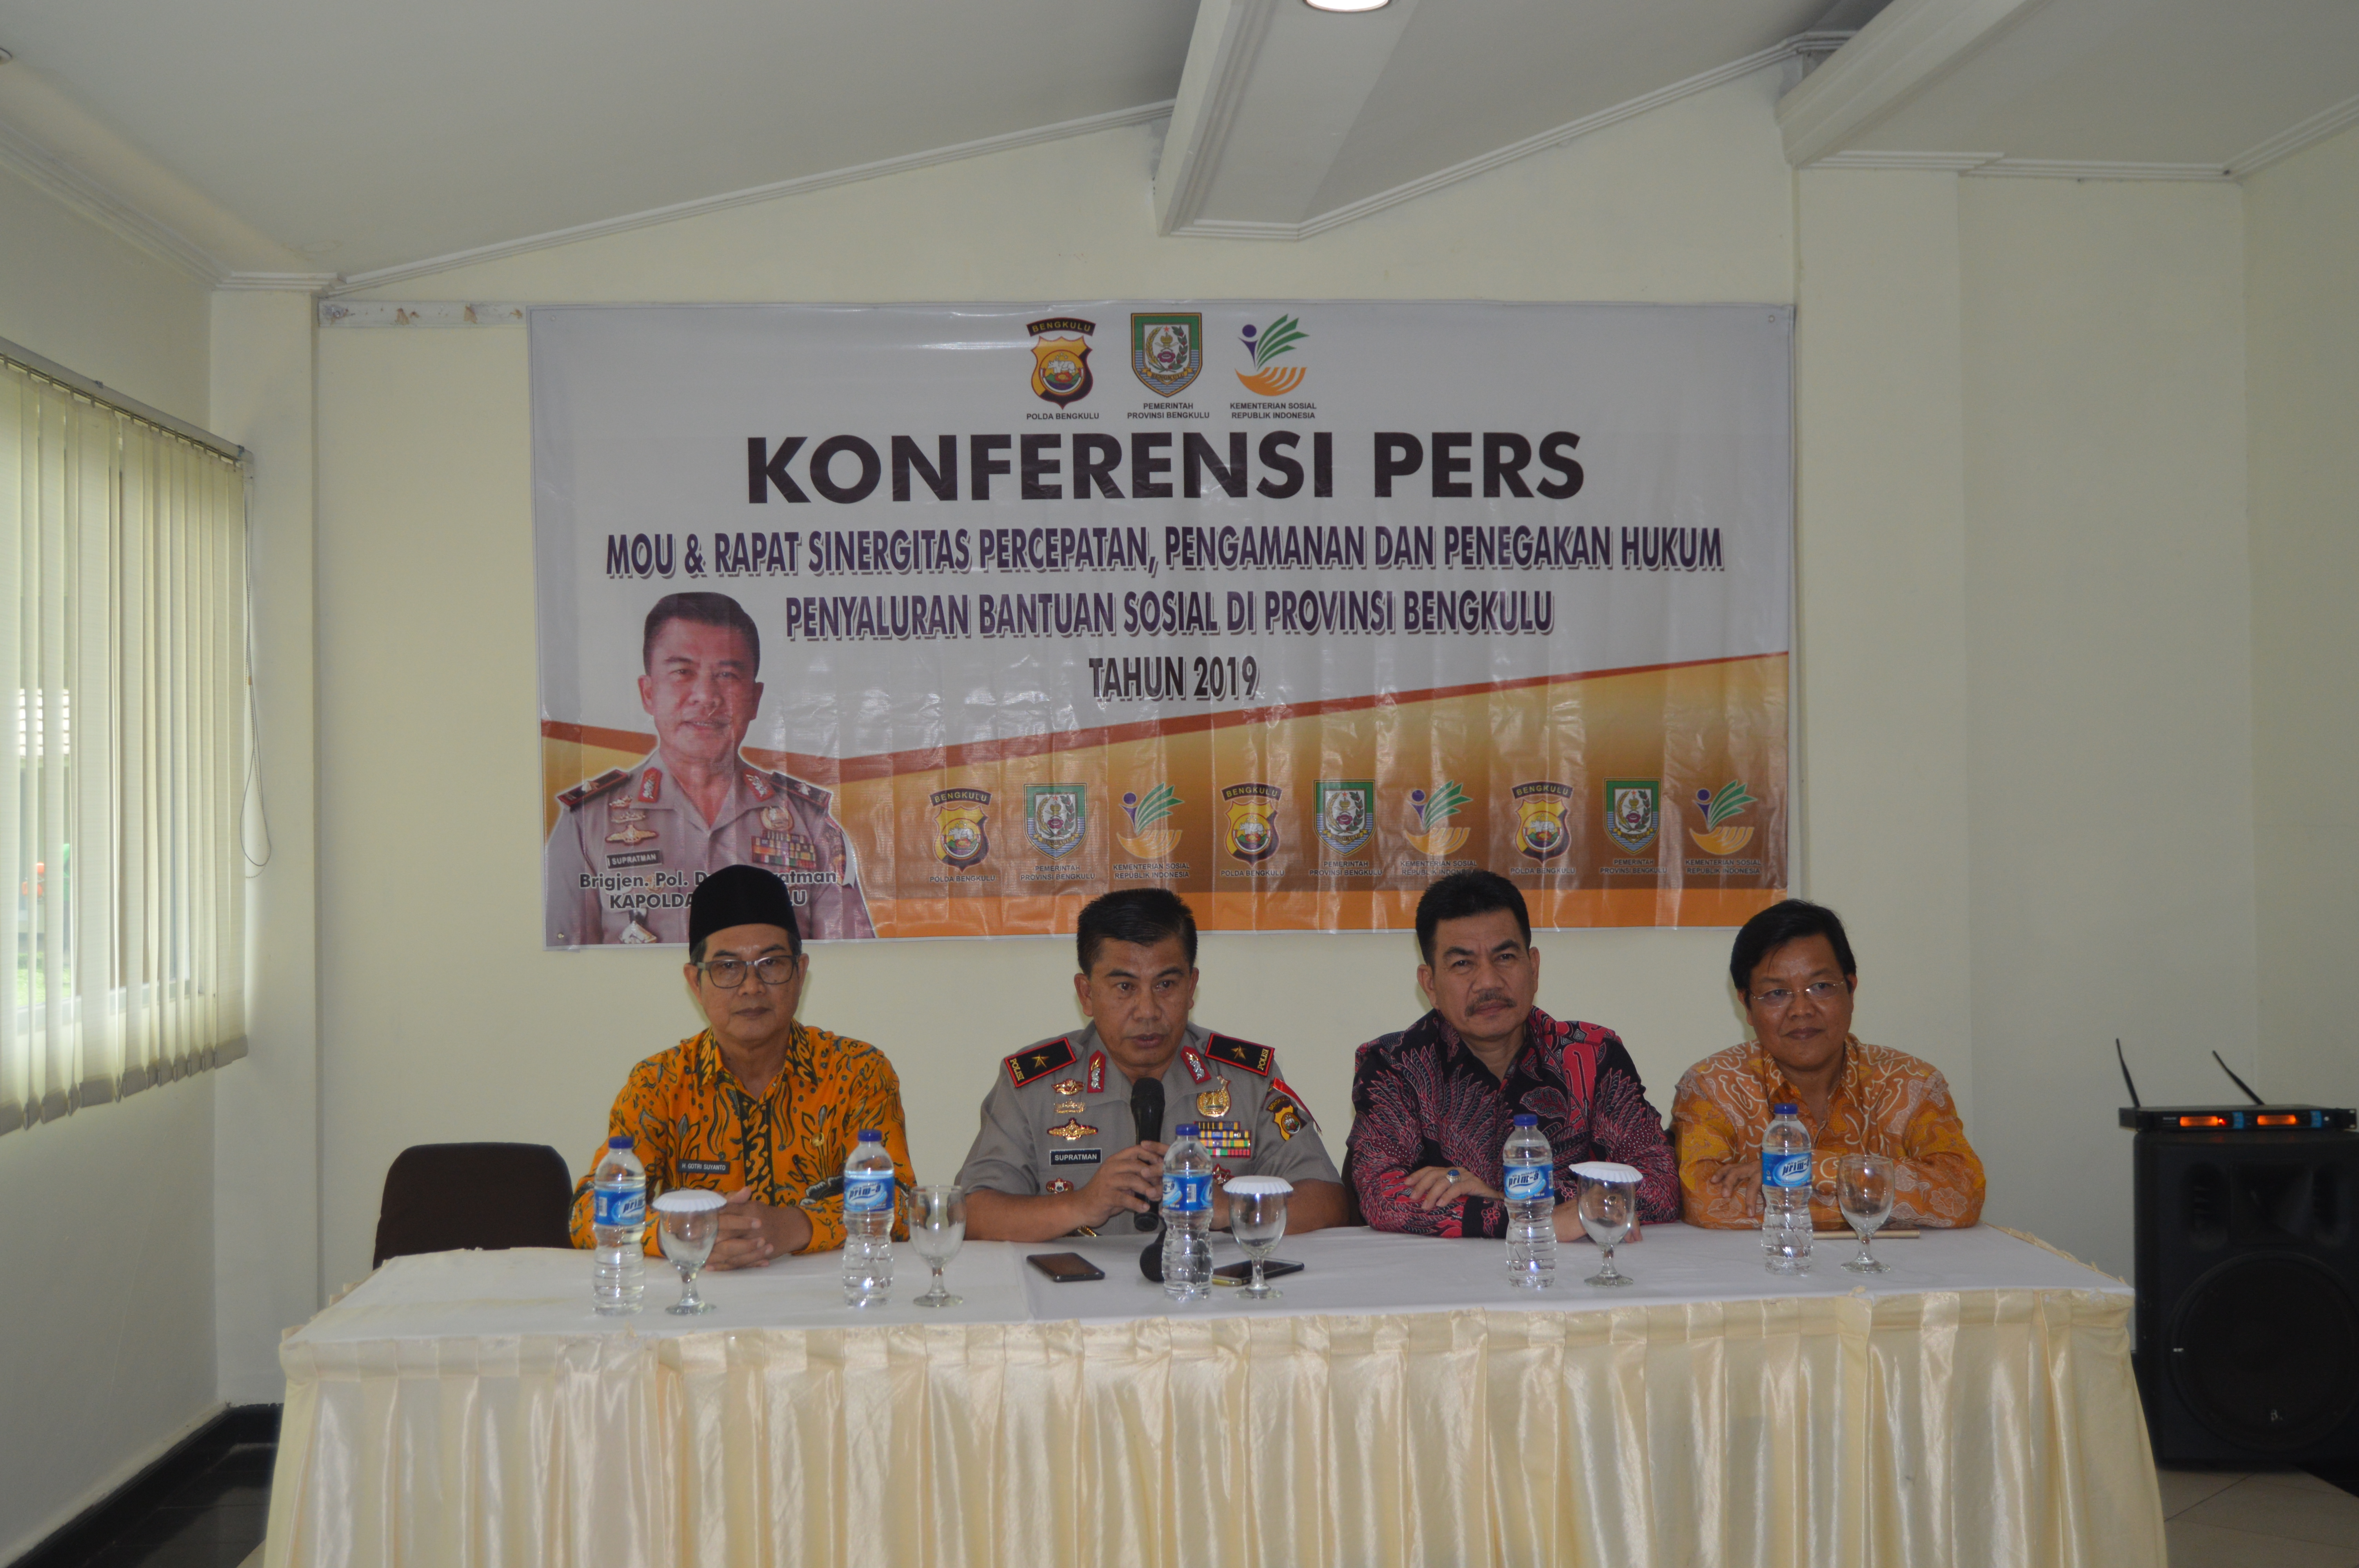 Konferensi Pers Pengawalan Penyaluran Bantuan di Provinsi Bengkulu